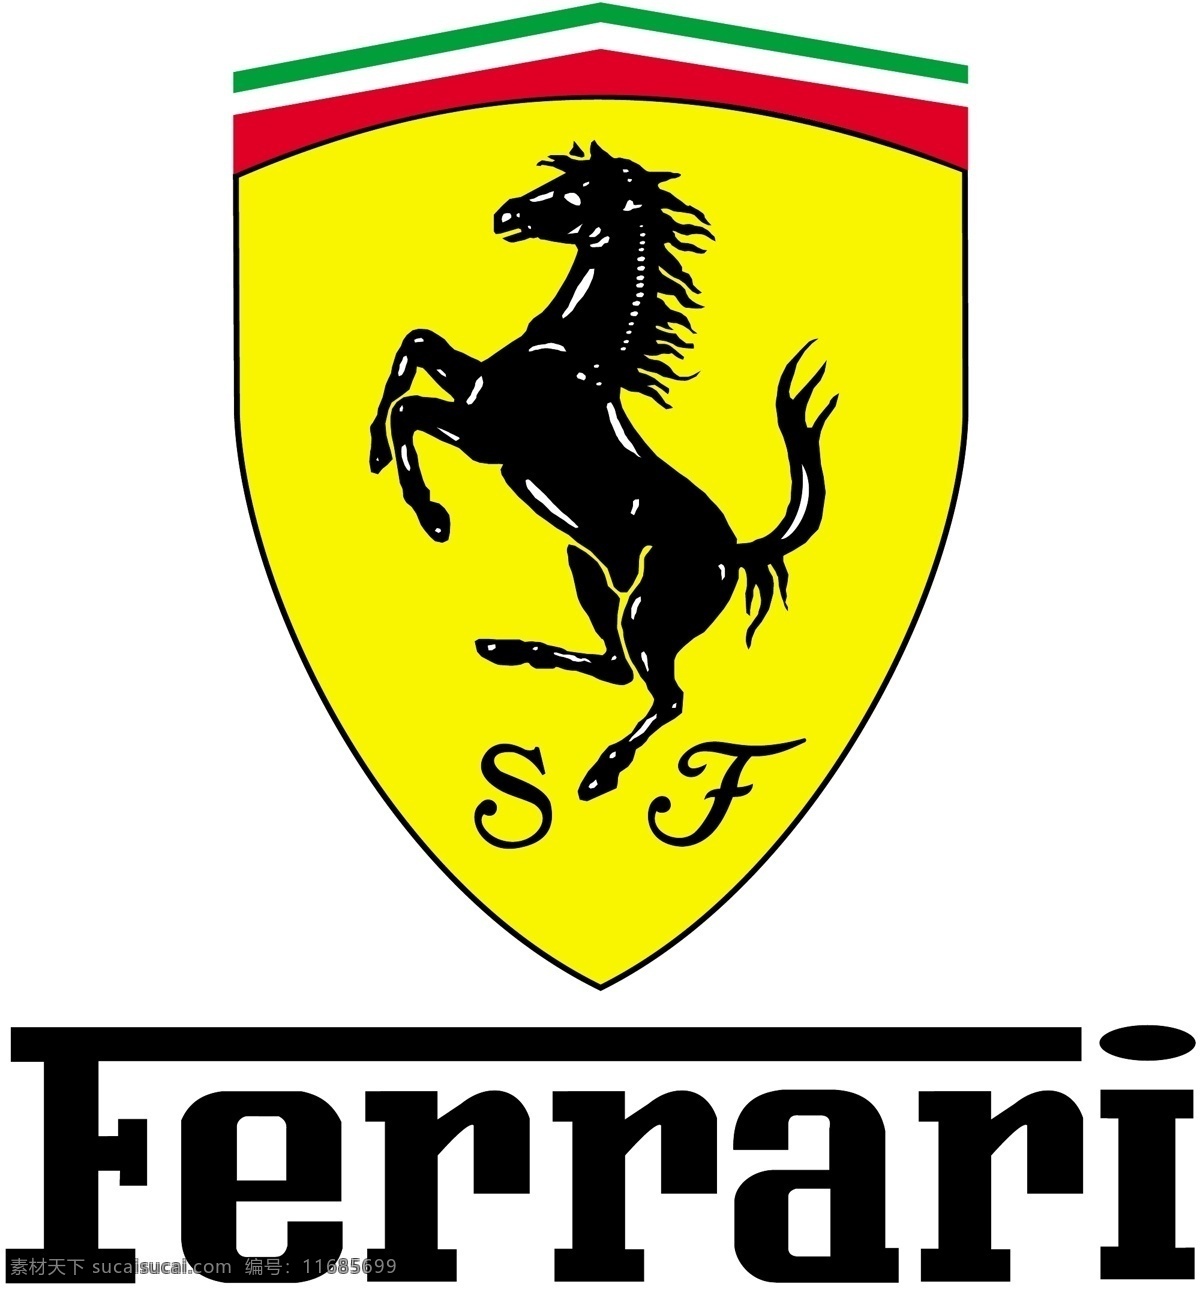 法拉利 logo 法拉利正版 ferrari 企业 标志 标识标志图标 矢量 logo设计